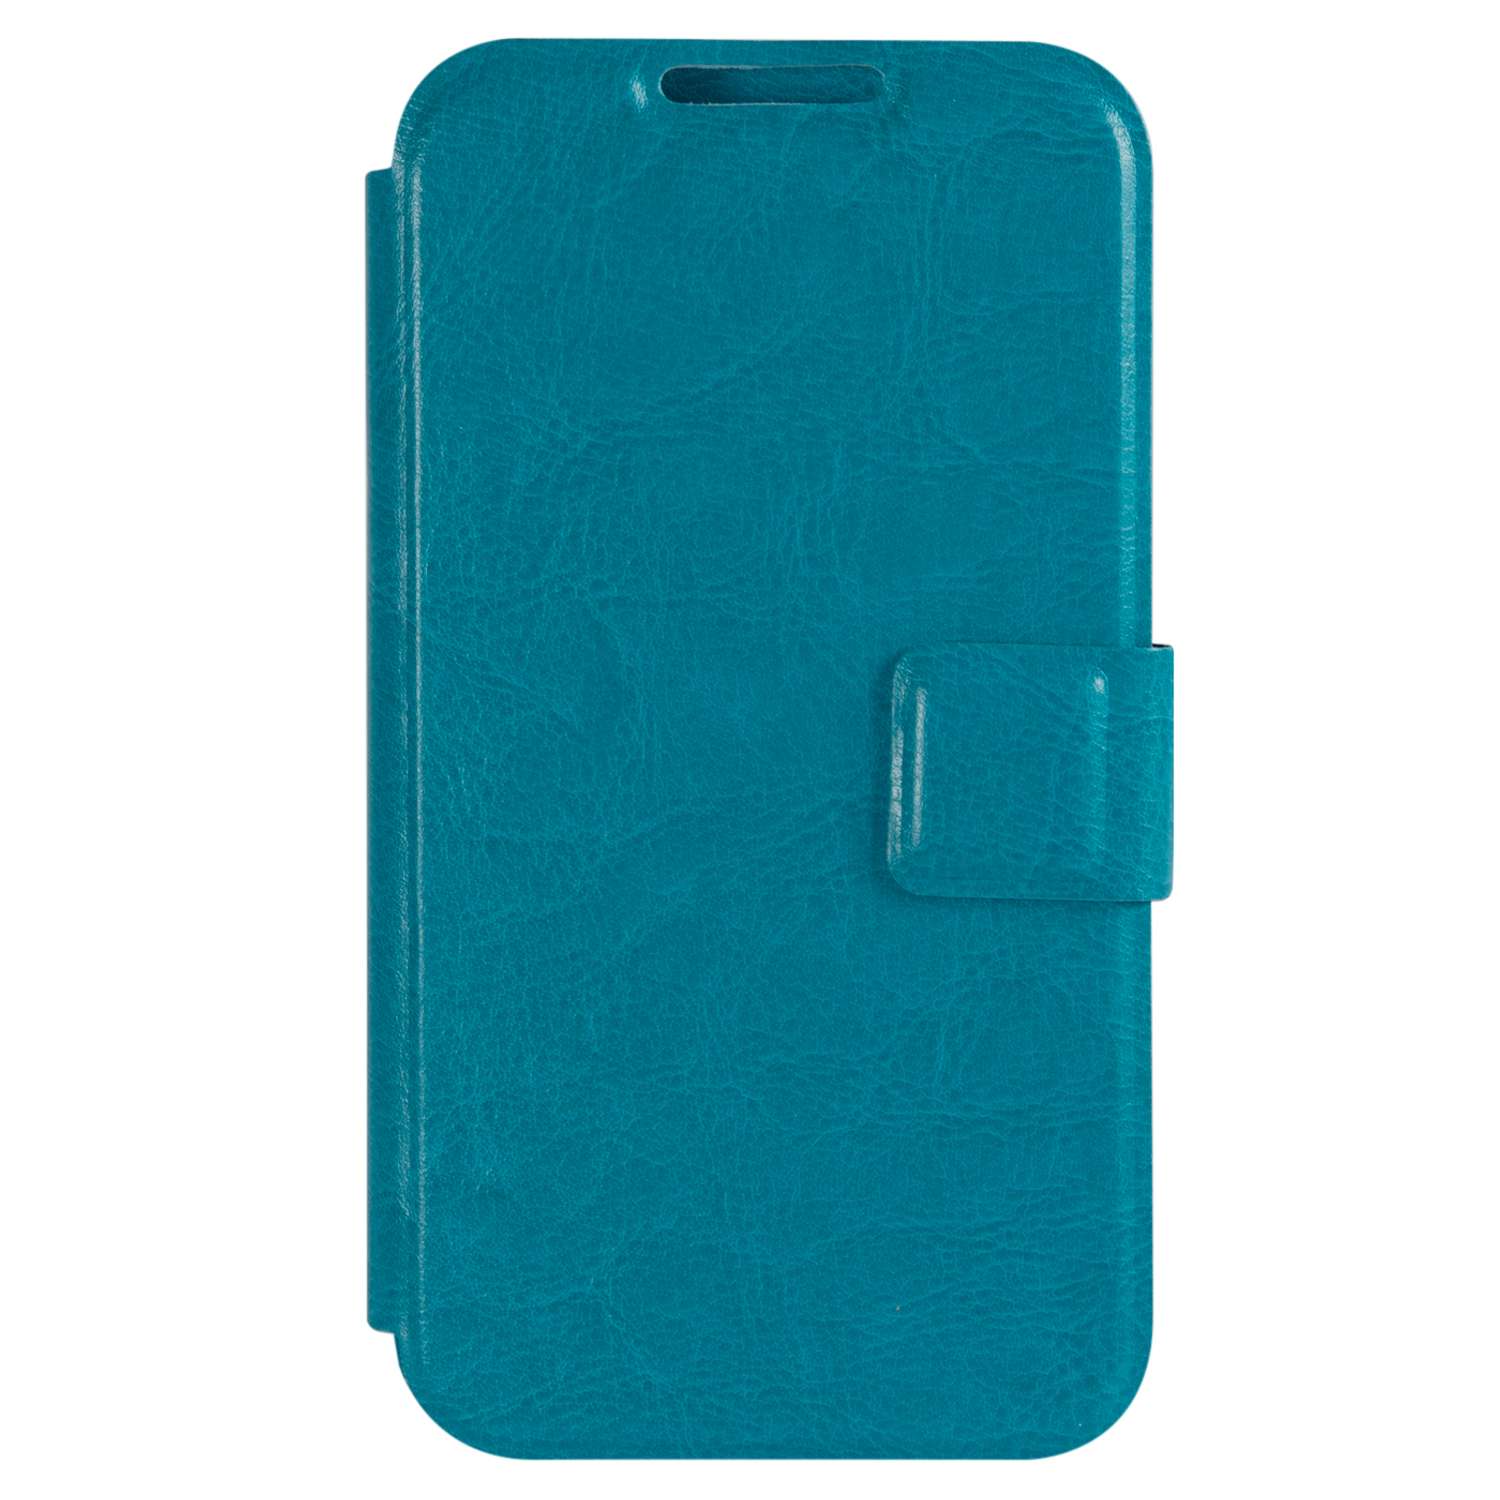 Чехол универсальный iBox Universal для телефонов 4.2-5 дюйма голубой - фото 3